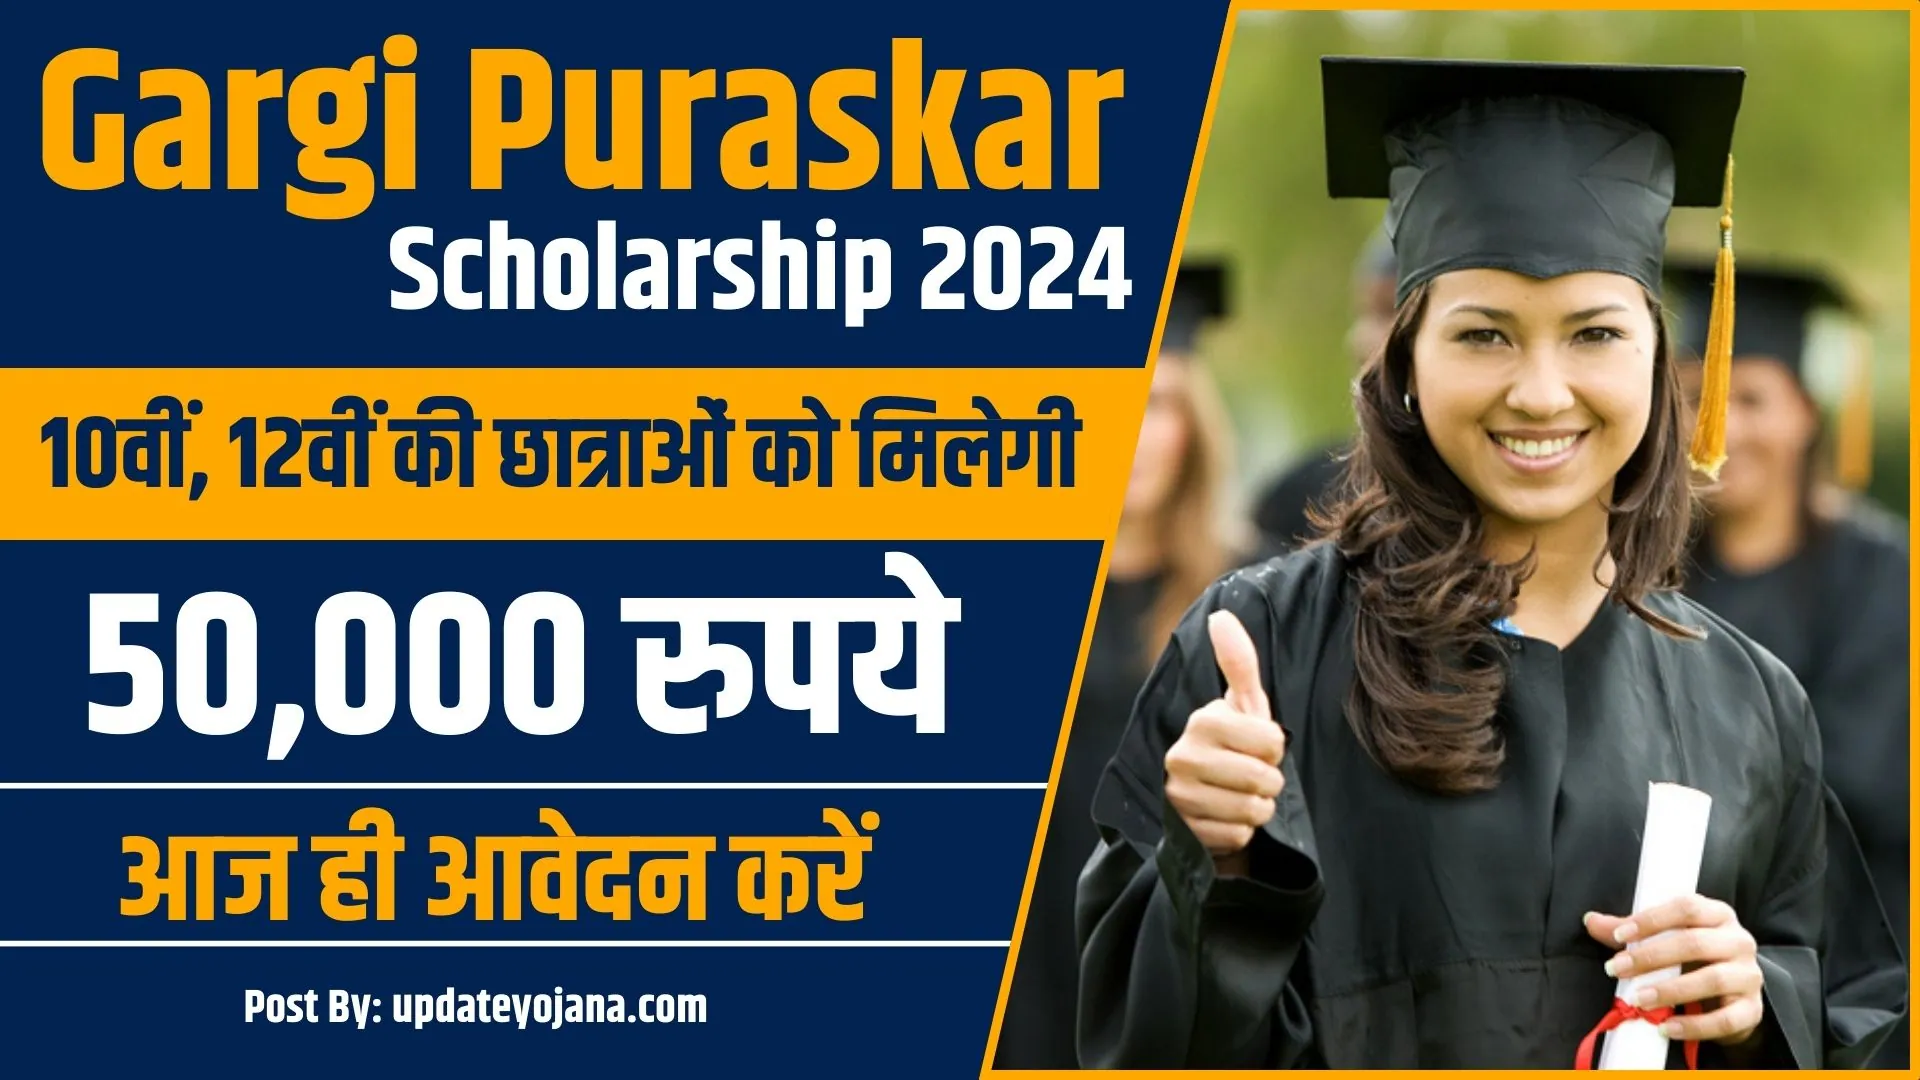 Gargi Puraskar Scholarship Yojana